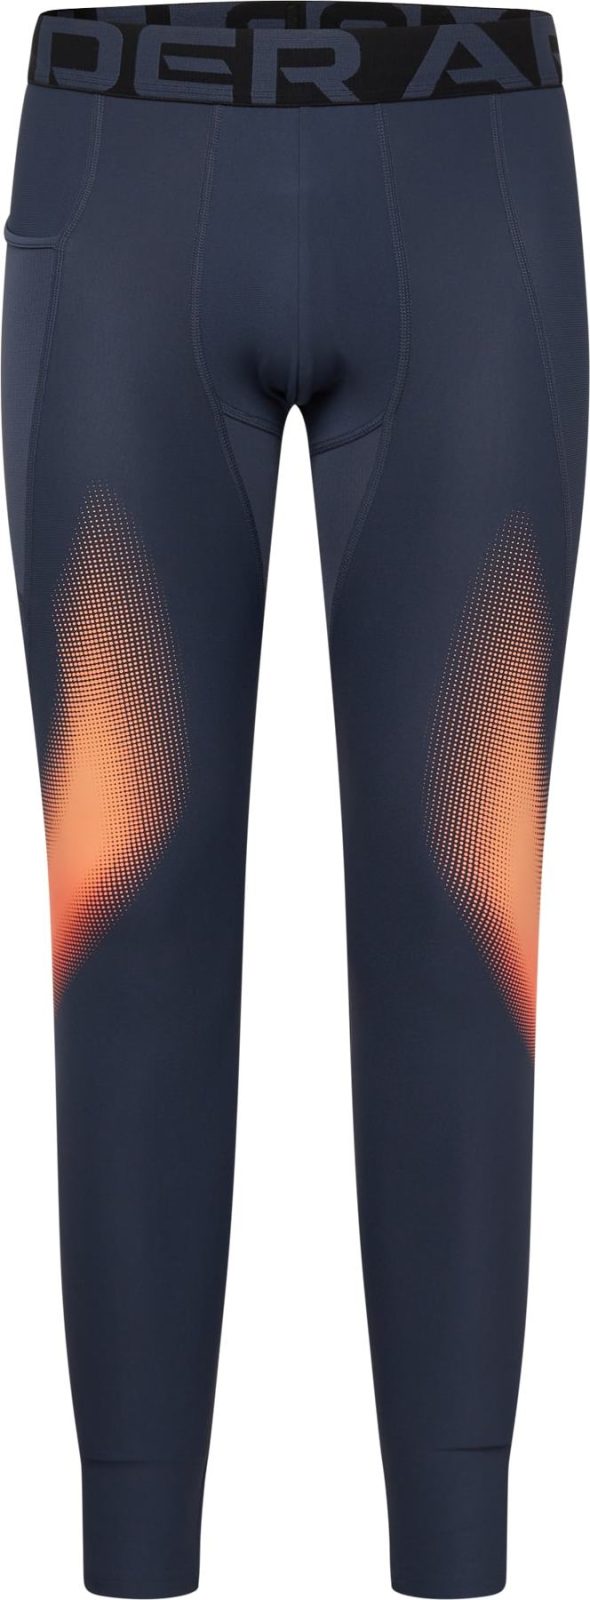 UNDER ARMOUR Sportovní kalhoty 'Novelty' tmavě šedá / lososová / černá